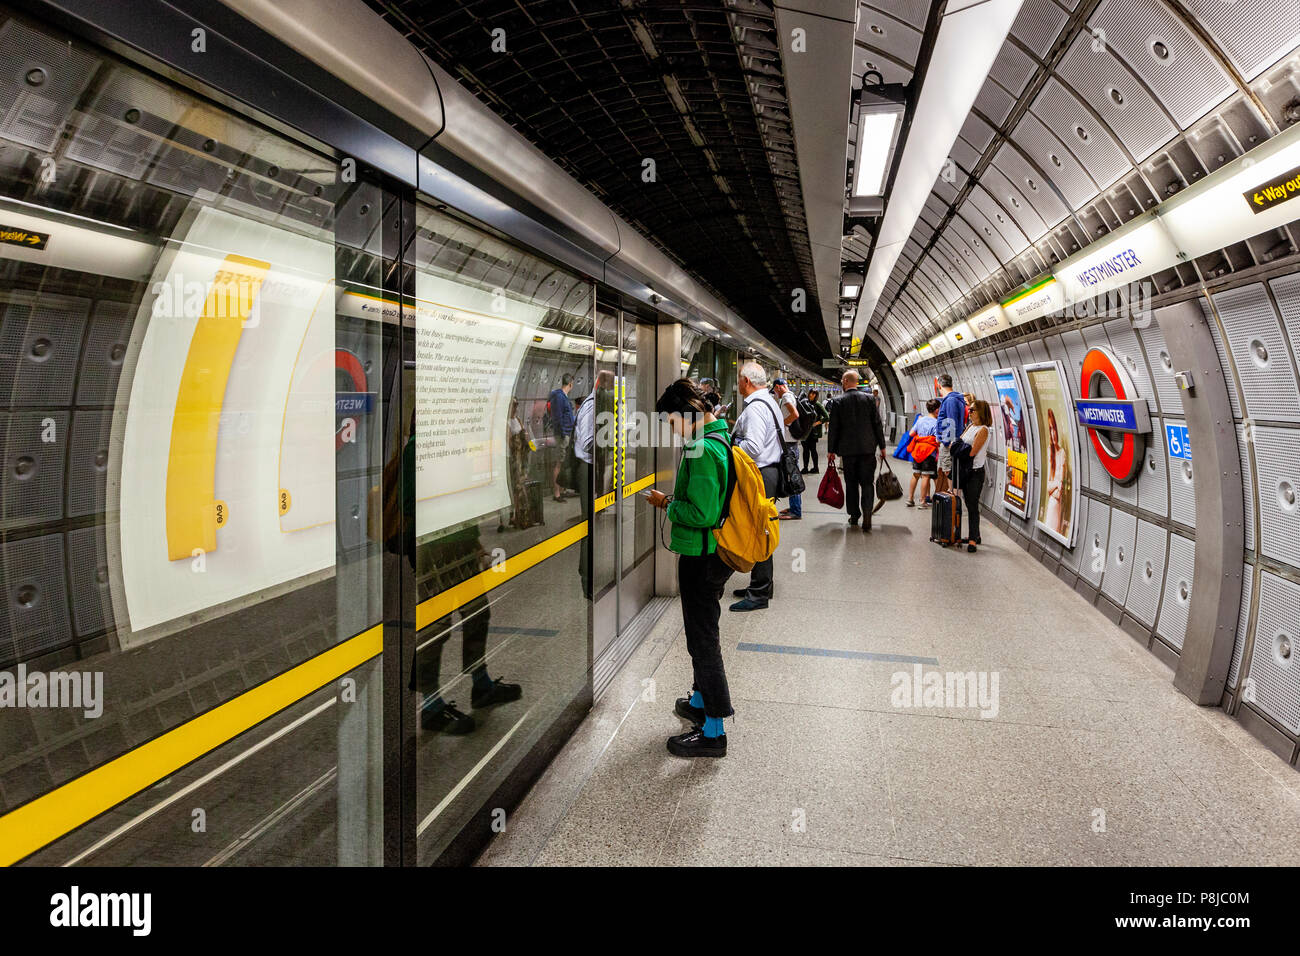 La gente esperando el tren, la estación de metro de Westminster, Londres, Inglaterra Foto de stock